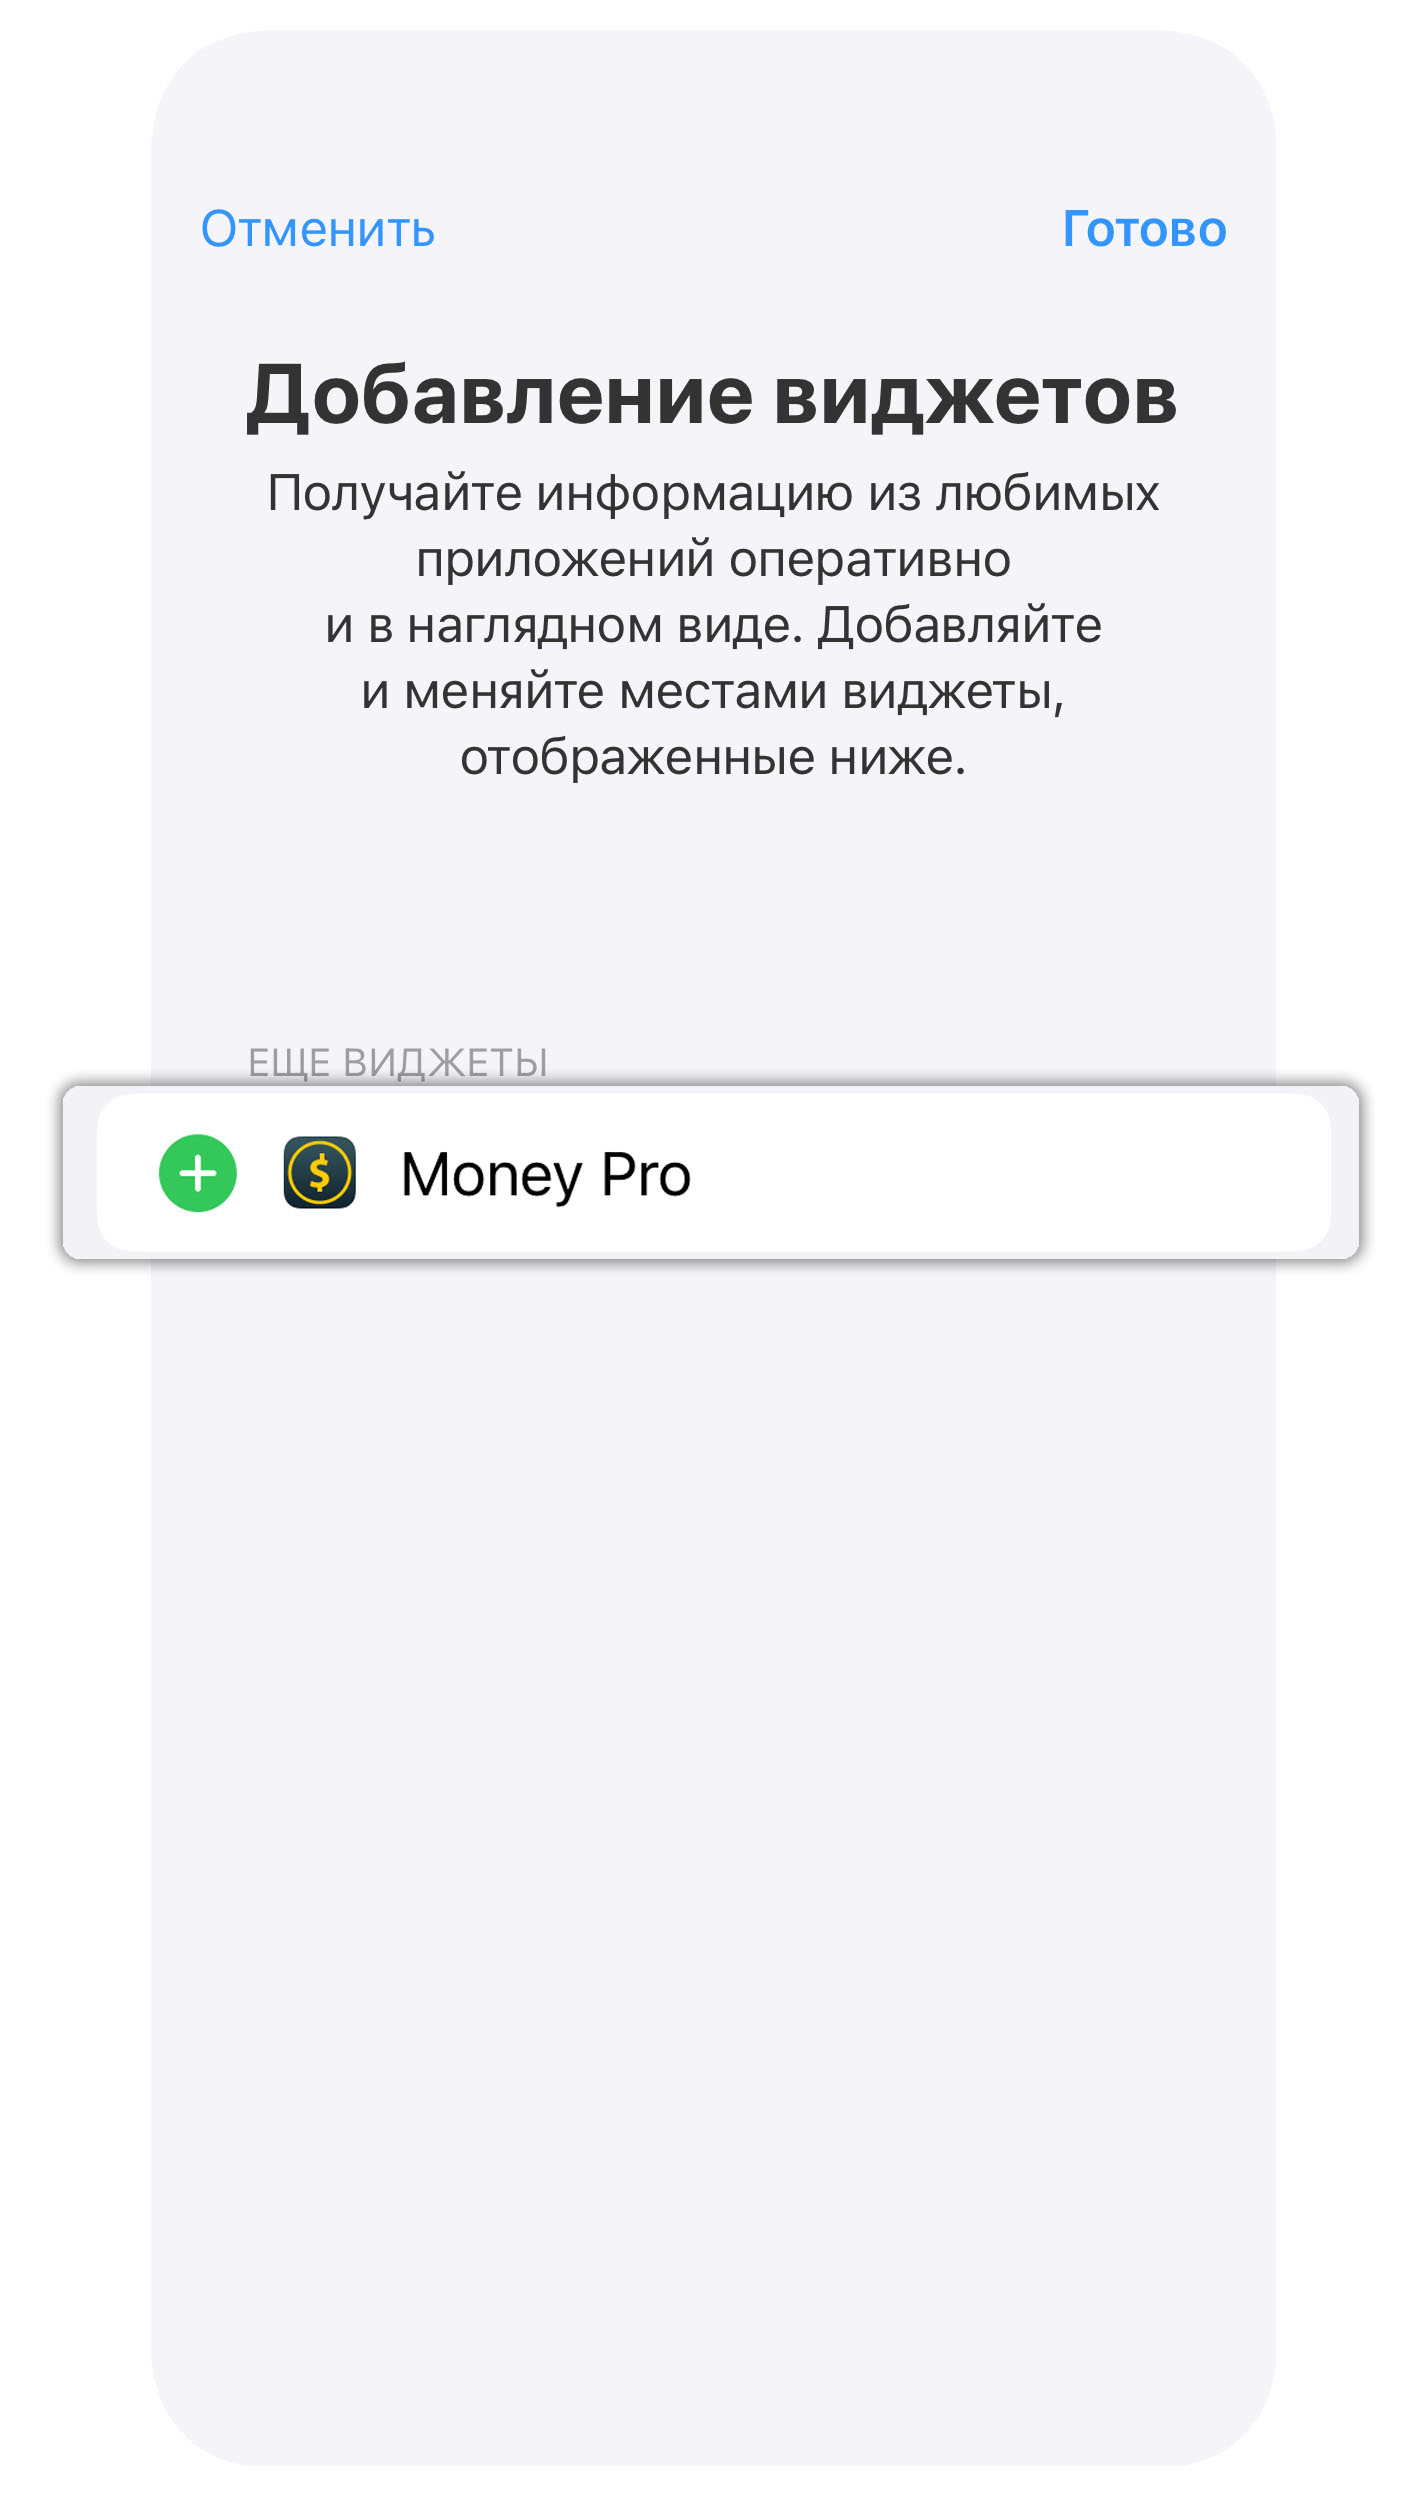 Money Pro - Виджет - iPhone